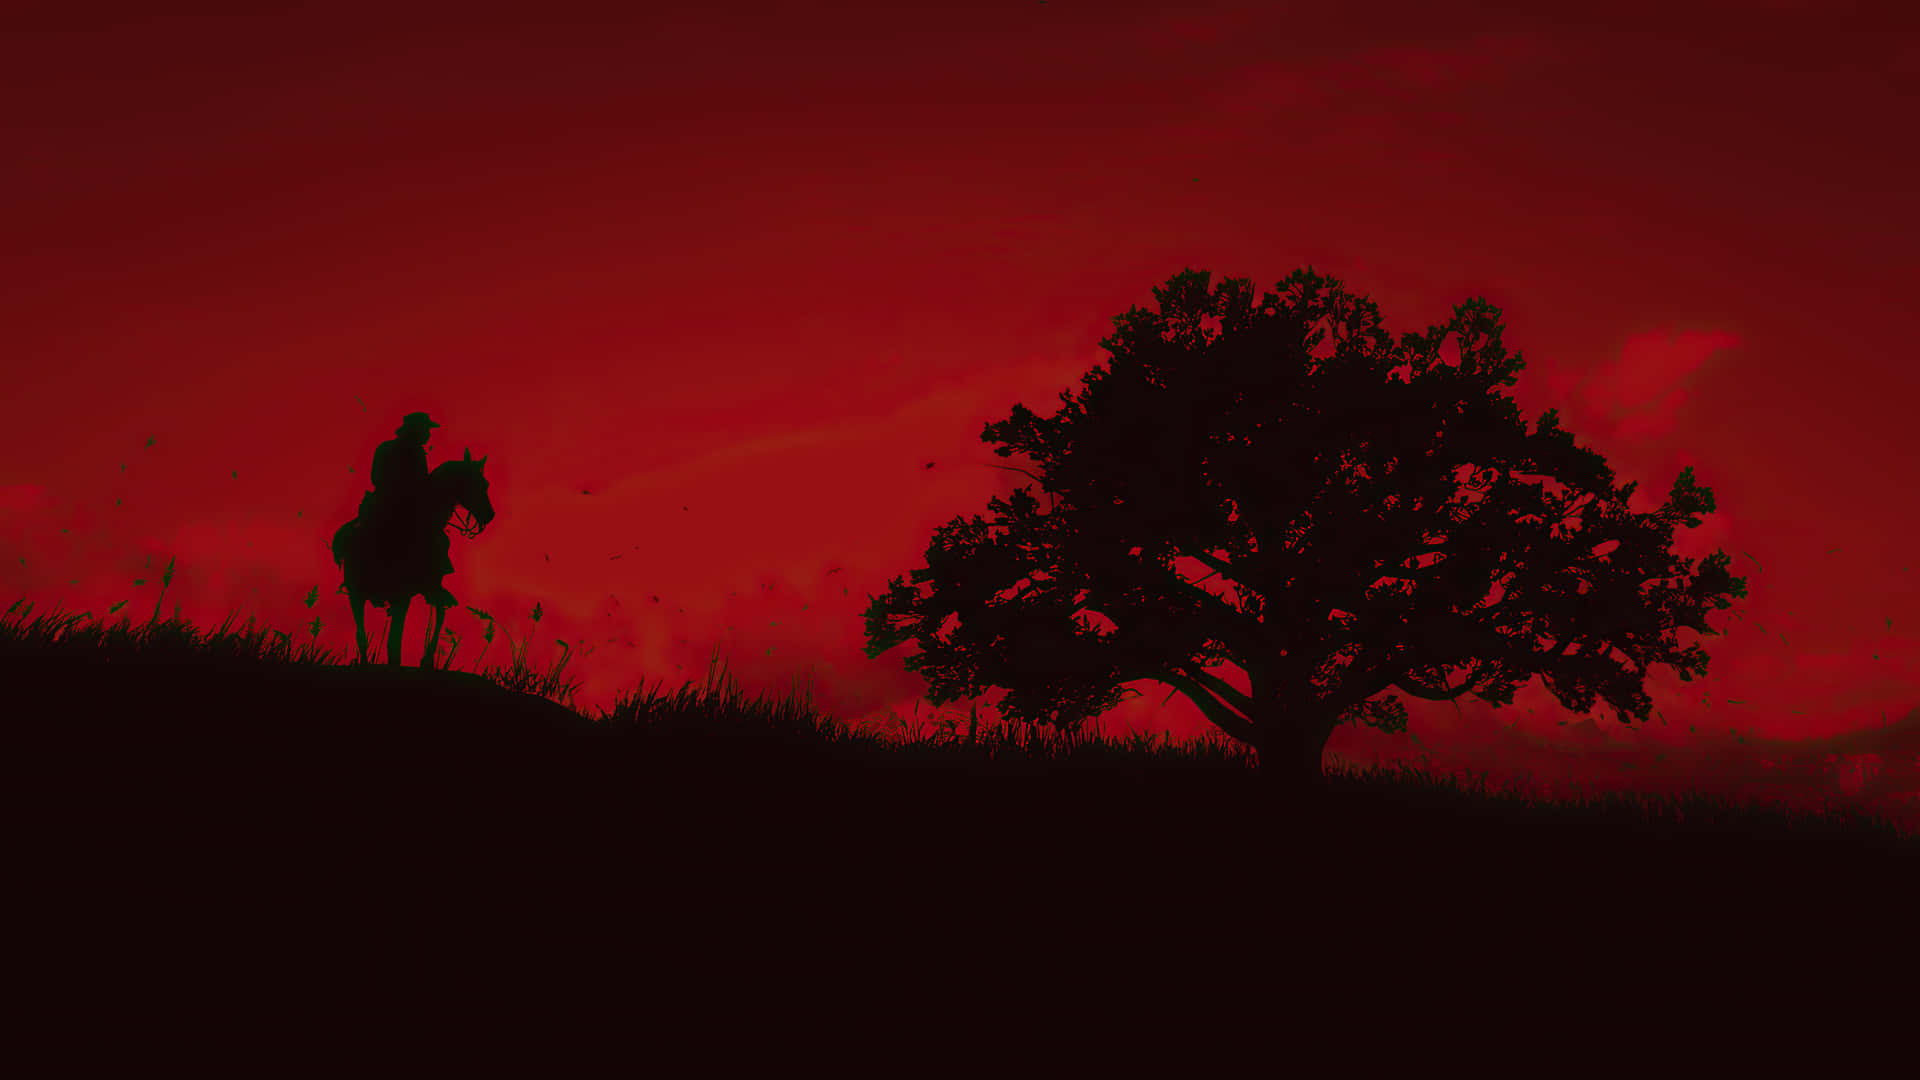 Migliorsfondo Di Red Dead Redemption 2: Silhouette Di Un Cowboy Su Uno Sfondo Rosso Scuro